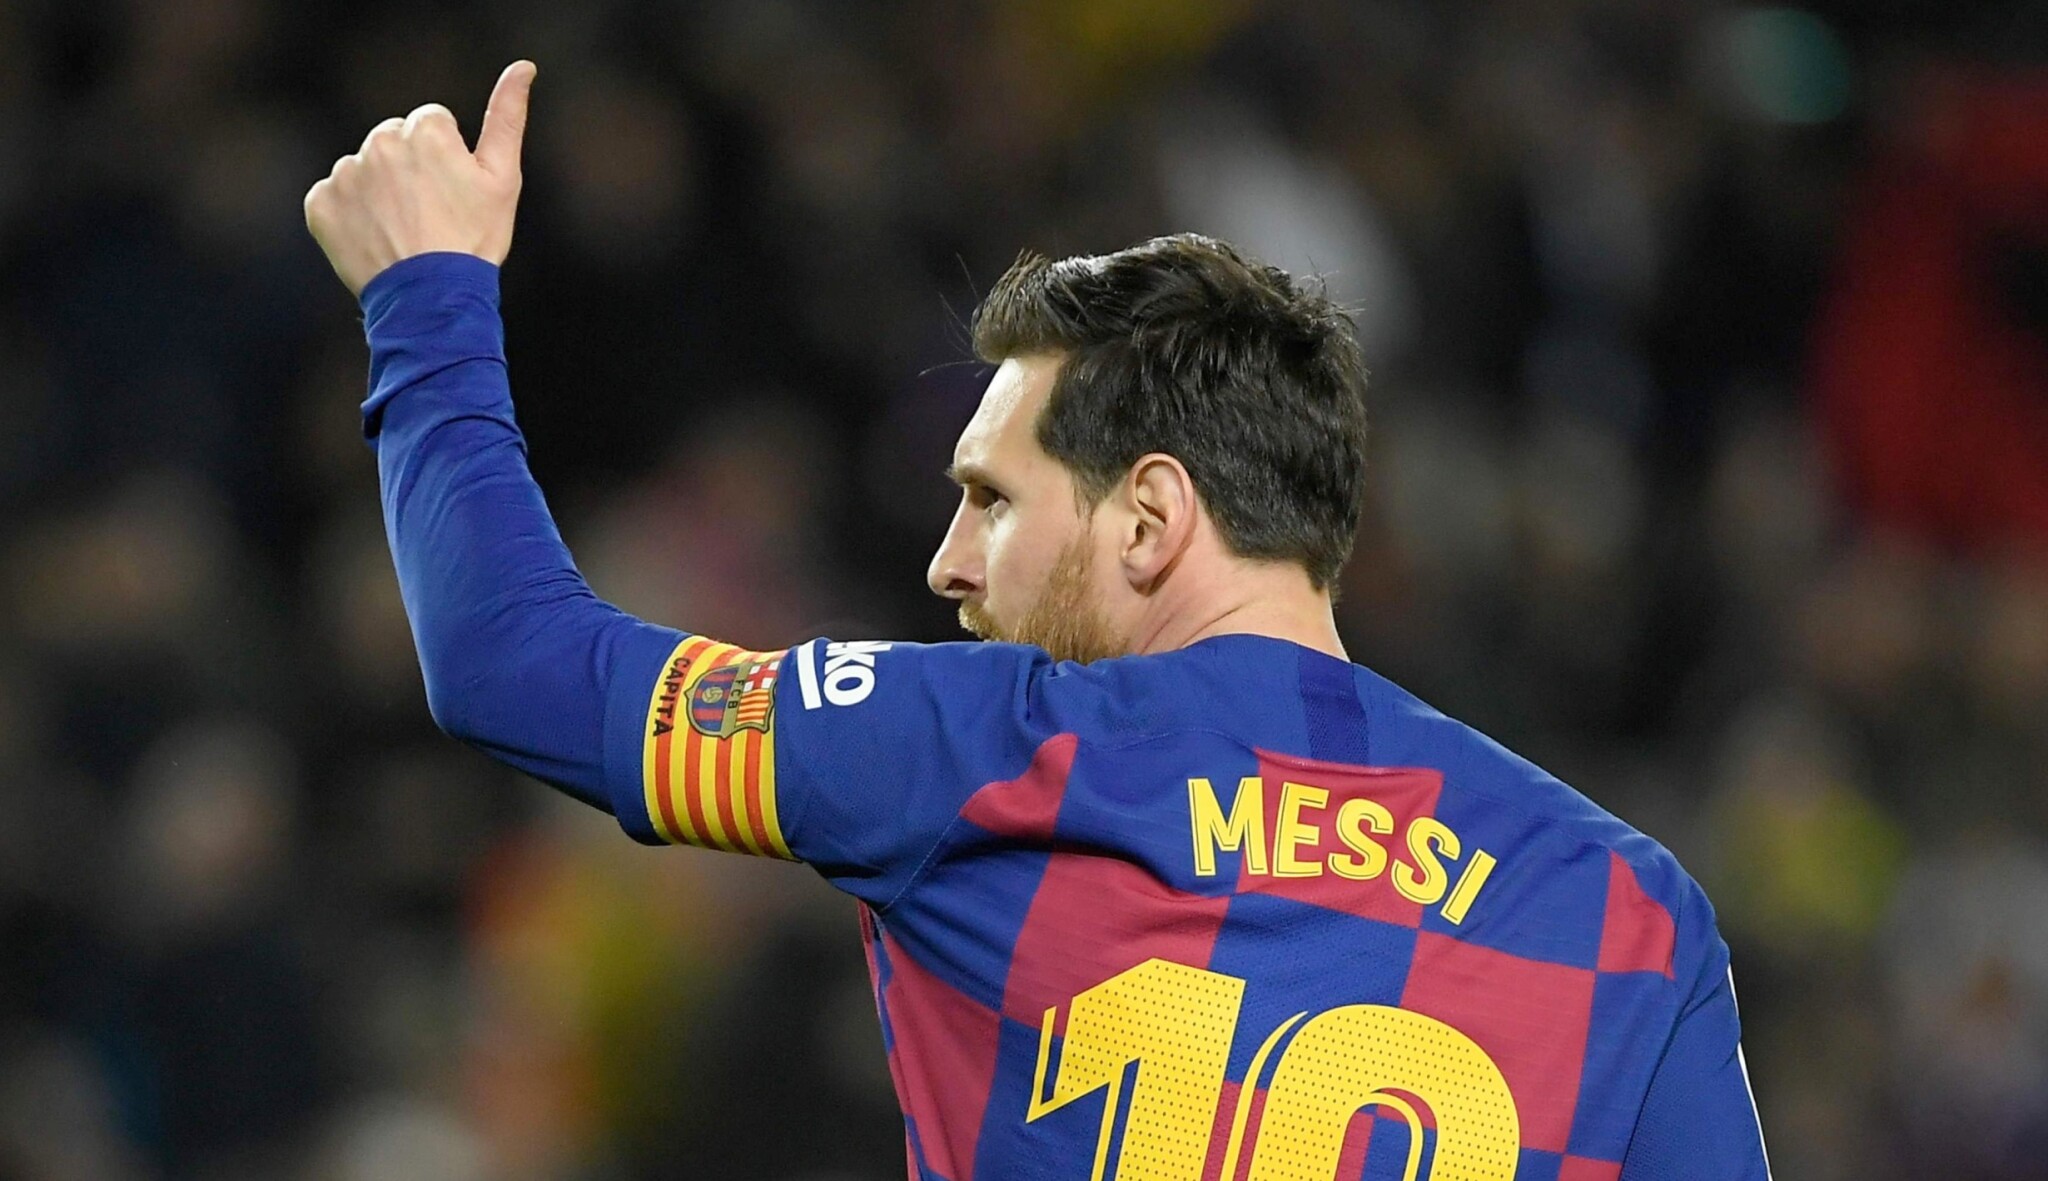 City stranou. Messi nejde do Anglie k šejkovi, který v klubu roztočil sto miliard